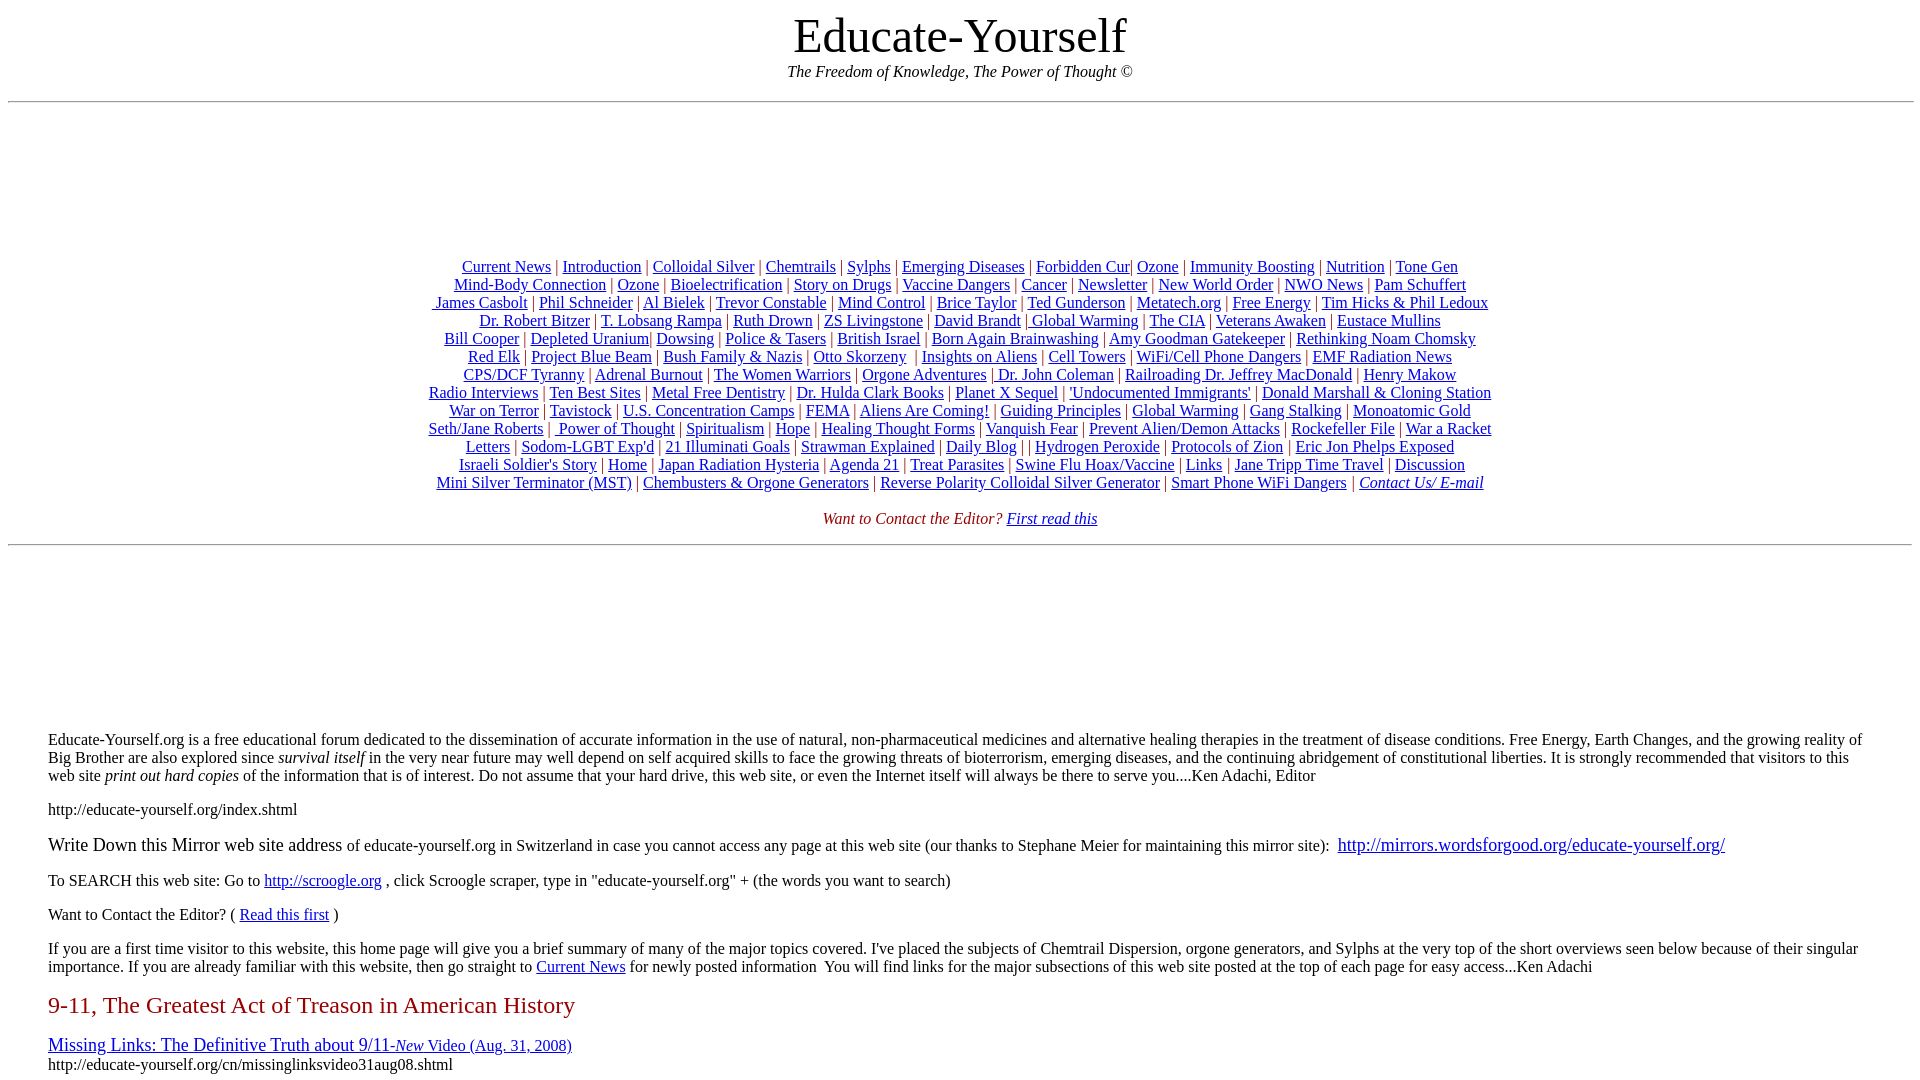 вебсайт educate-yourself.org Є   ONLINE